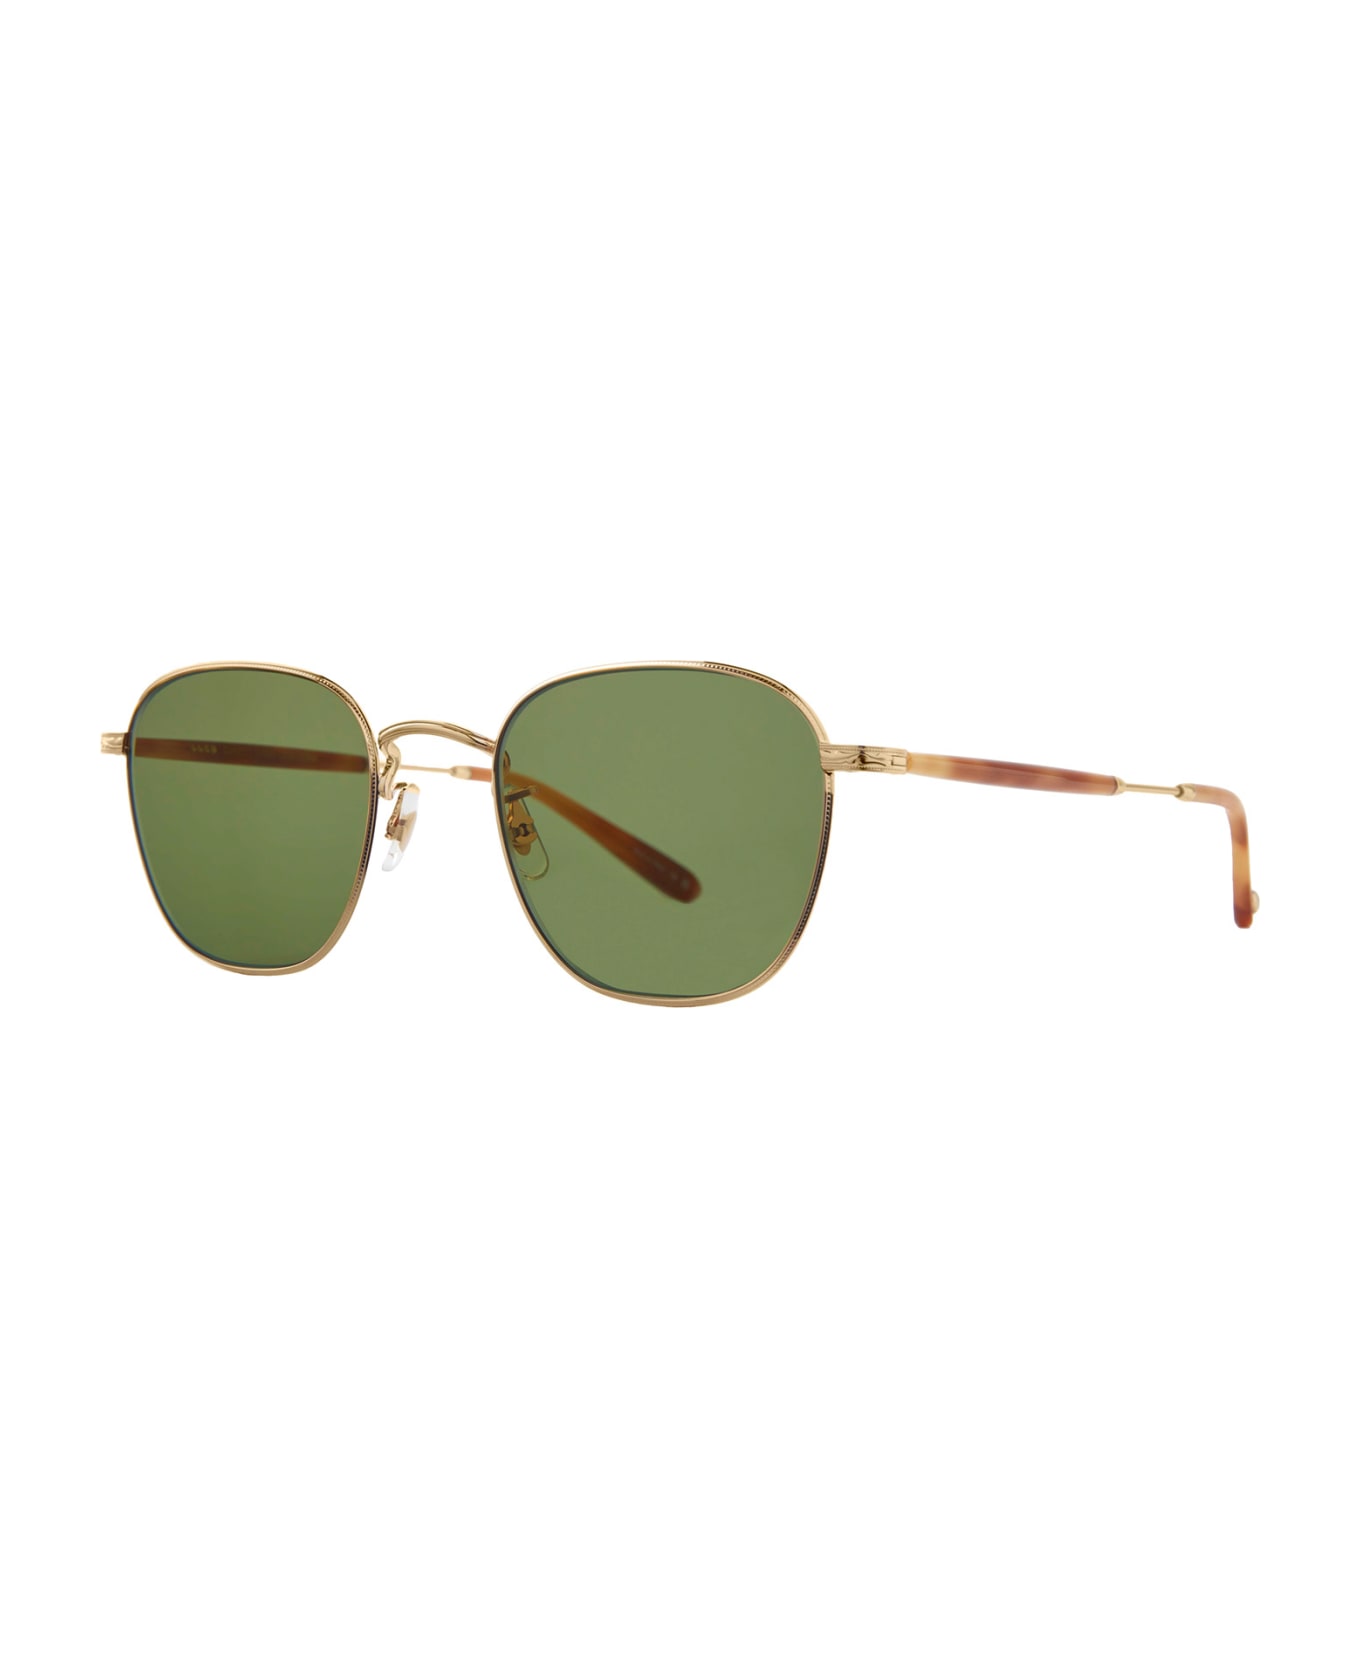 Garrett Leight World Sun Gold-ember Tortoise/semi-flat Green Sunglasses - Gold-Ember Tortoise/Semi-Flat Green